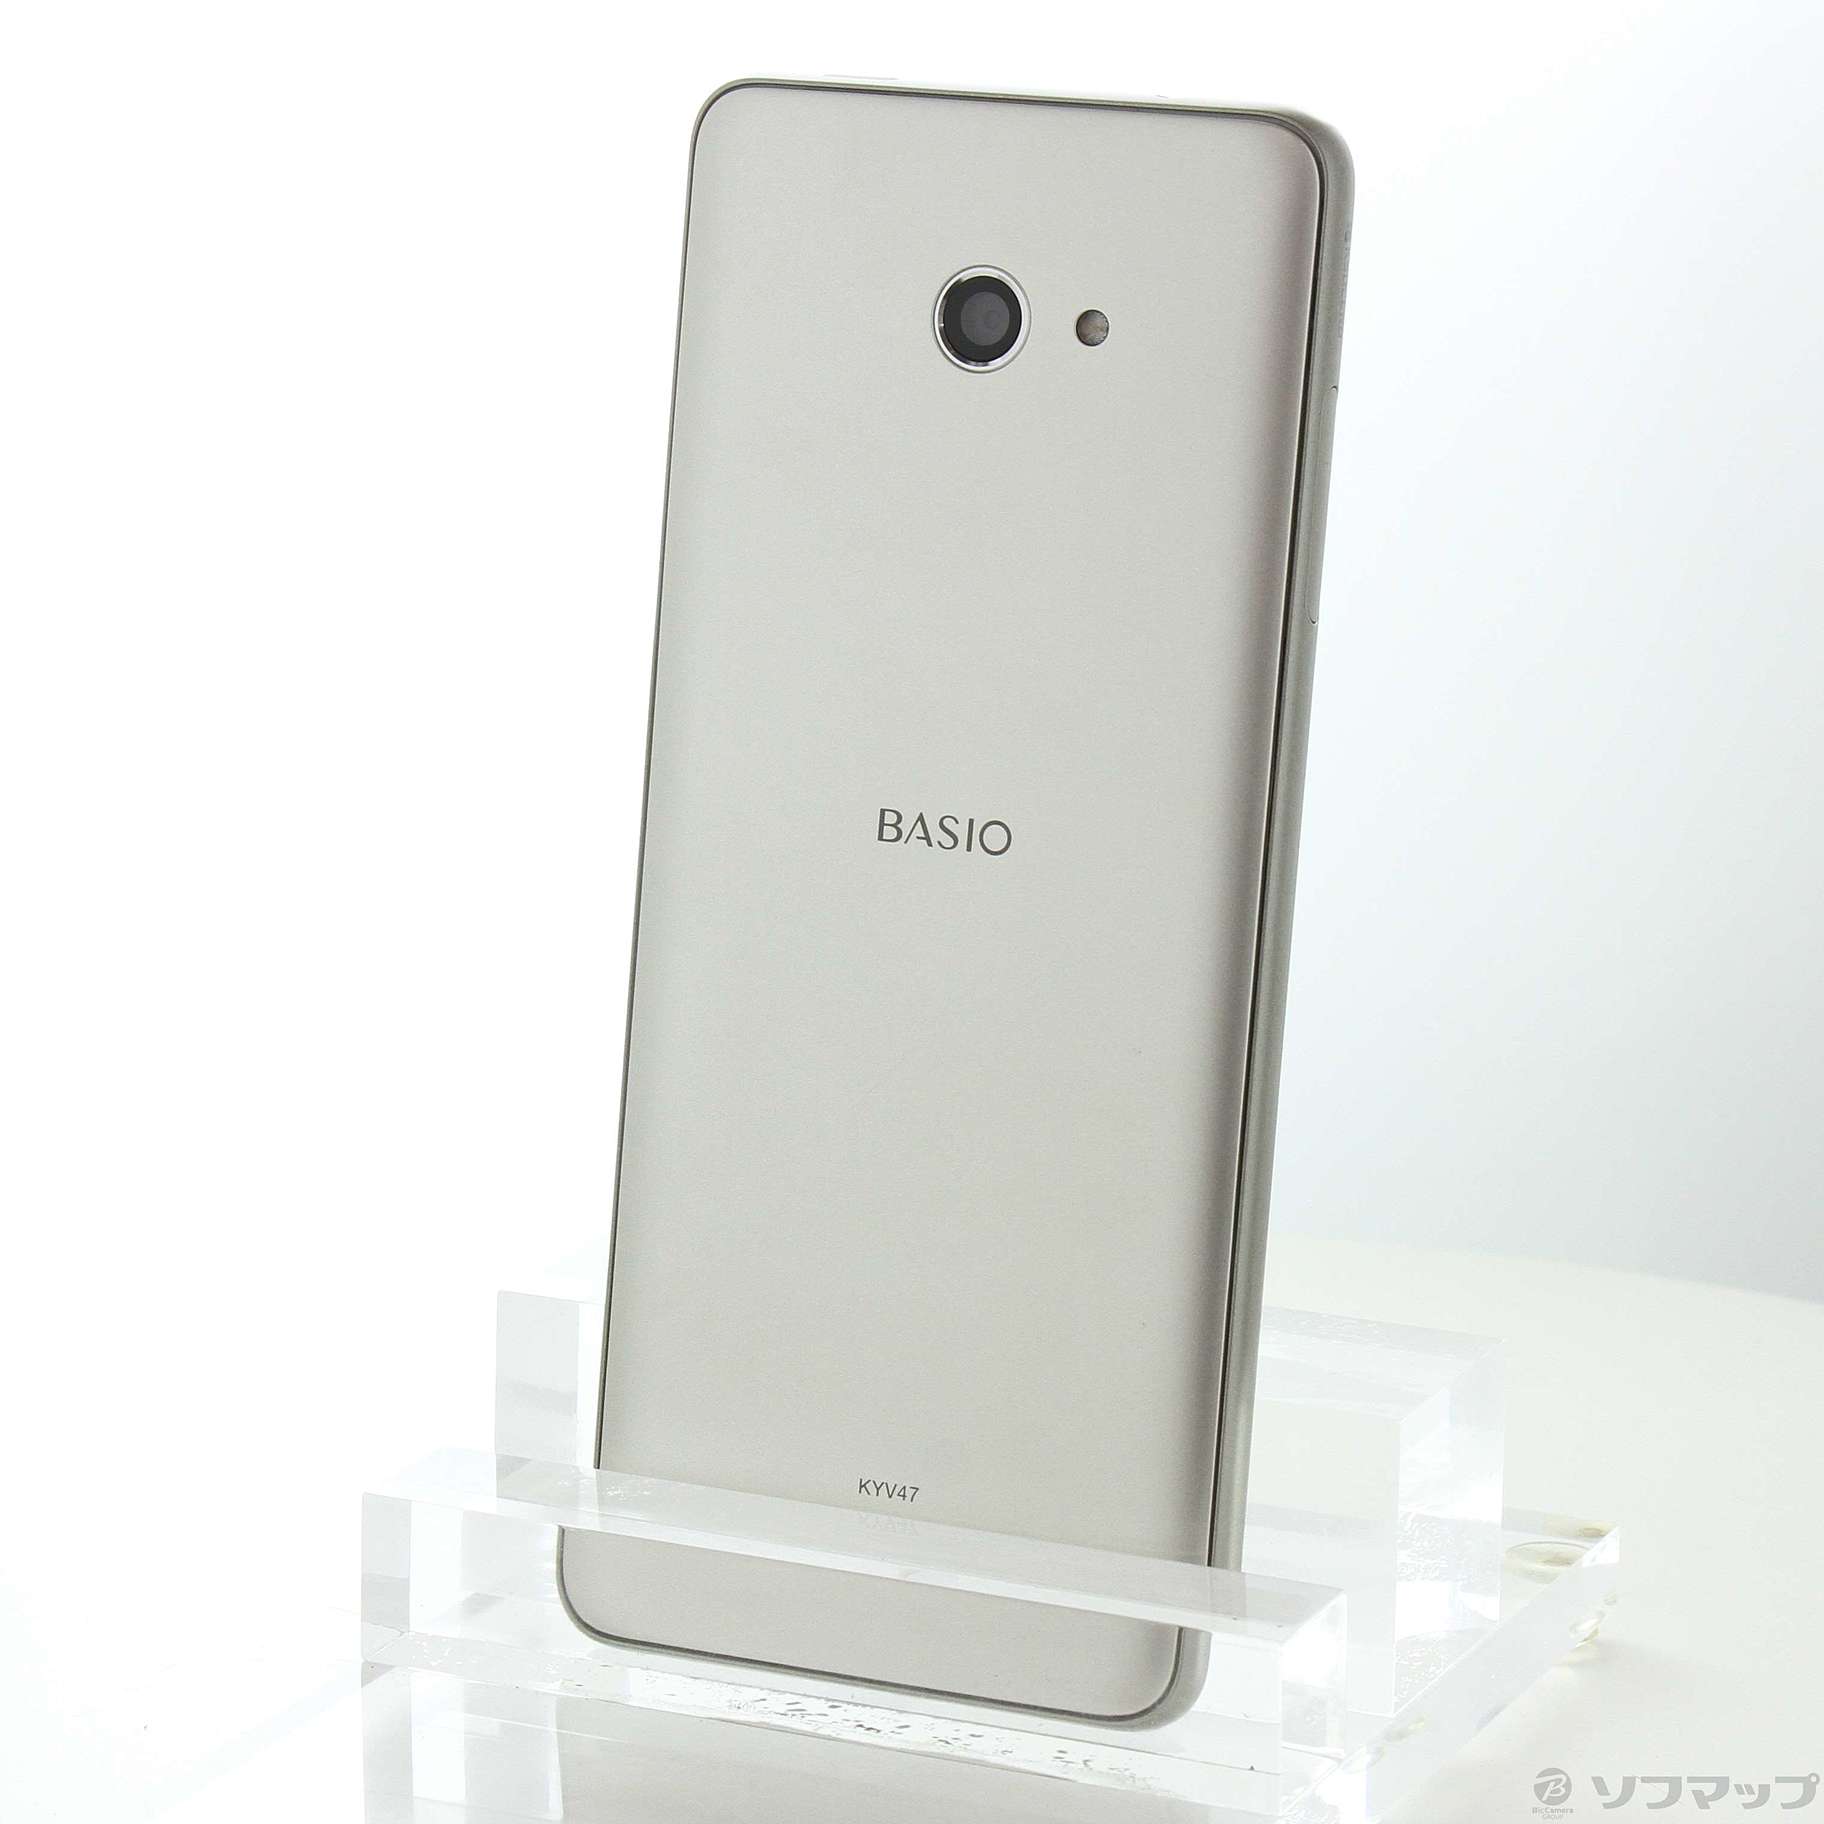 BASIO4 KYV47 32G SIMフリー - スマートフォン本体